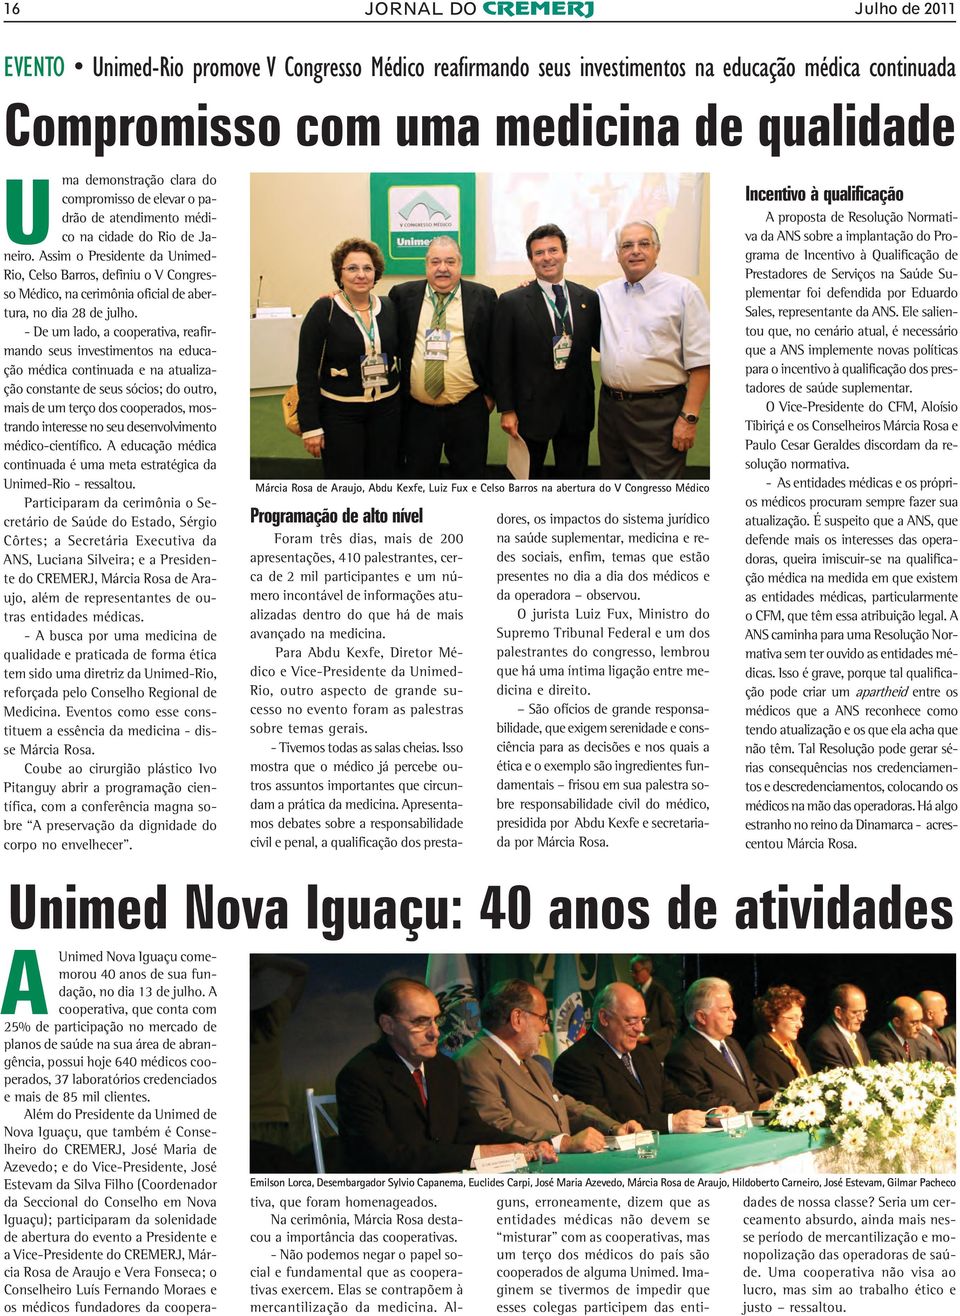 Assim o Presidente da Unimed- Rio, Celso Barros, definiu o V Congresso Médico, na cerimônia oficial de abertura, no dia 28 de julho.